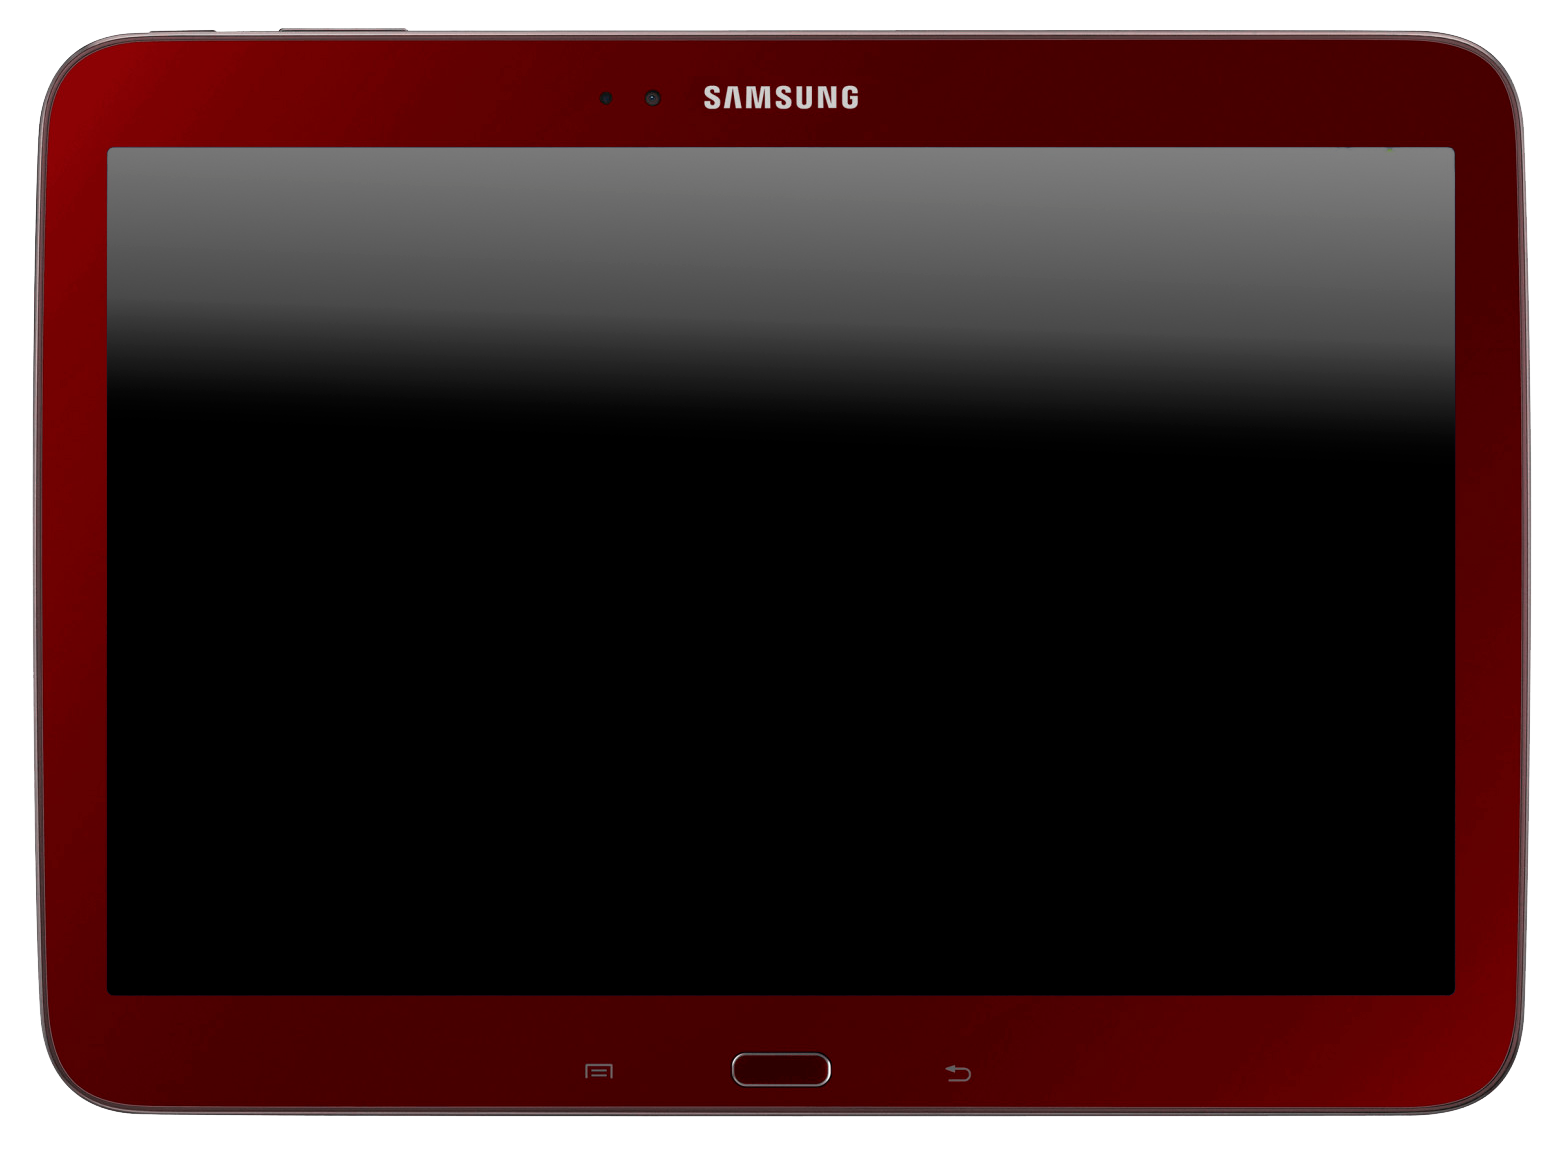 Samsung Galaxy Tab 3 10.1 Wi-Fi braun - Ohne Vertrag